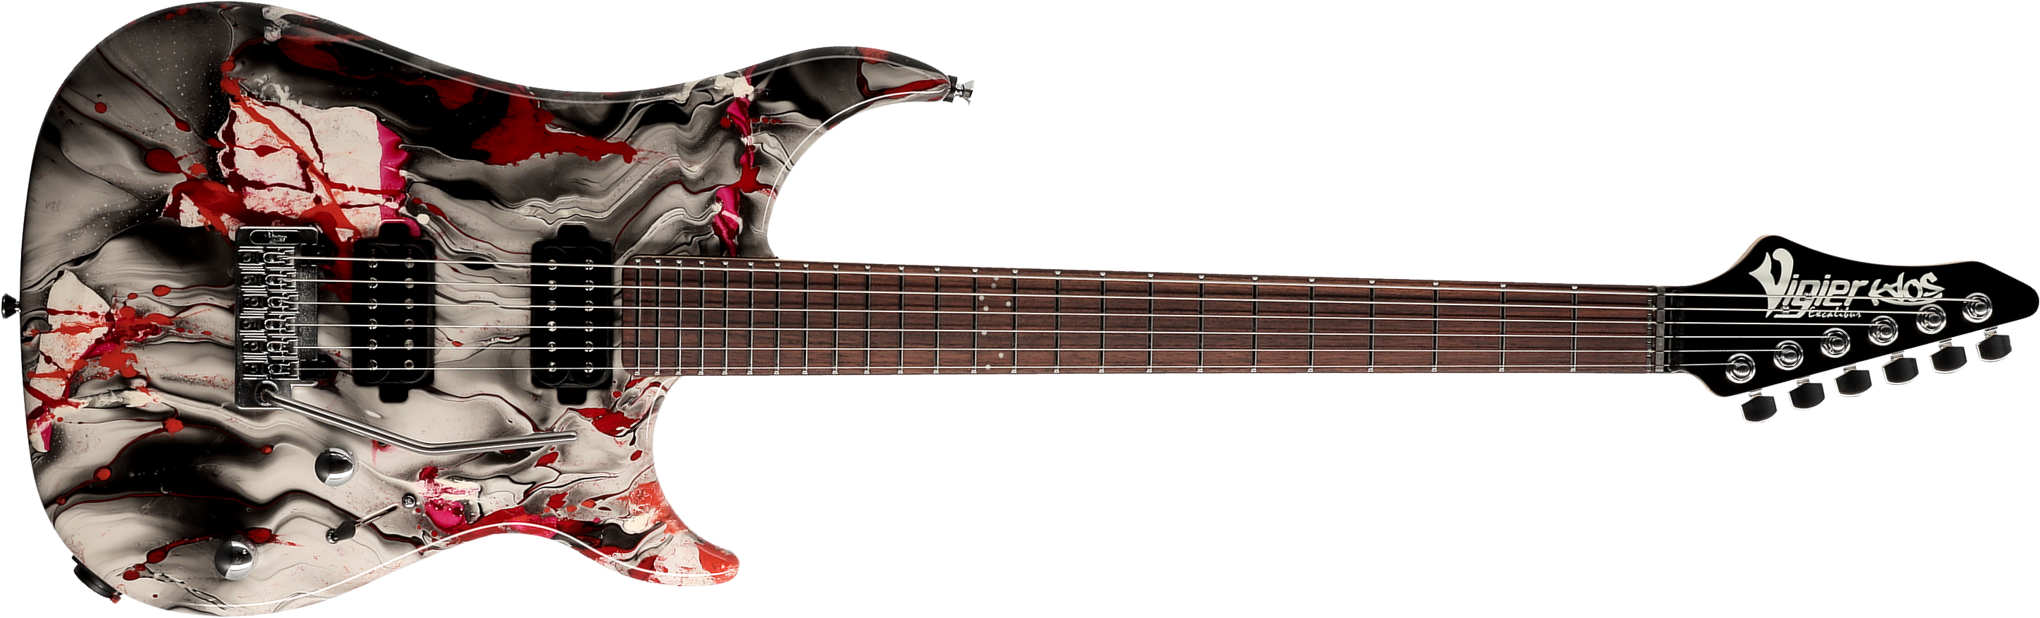 Vigier Excalibur Kaos 2h Trem Rw - Rock Art Chrome Black Red - Str shape electric guitar - Main picture